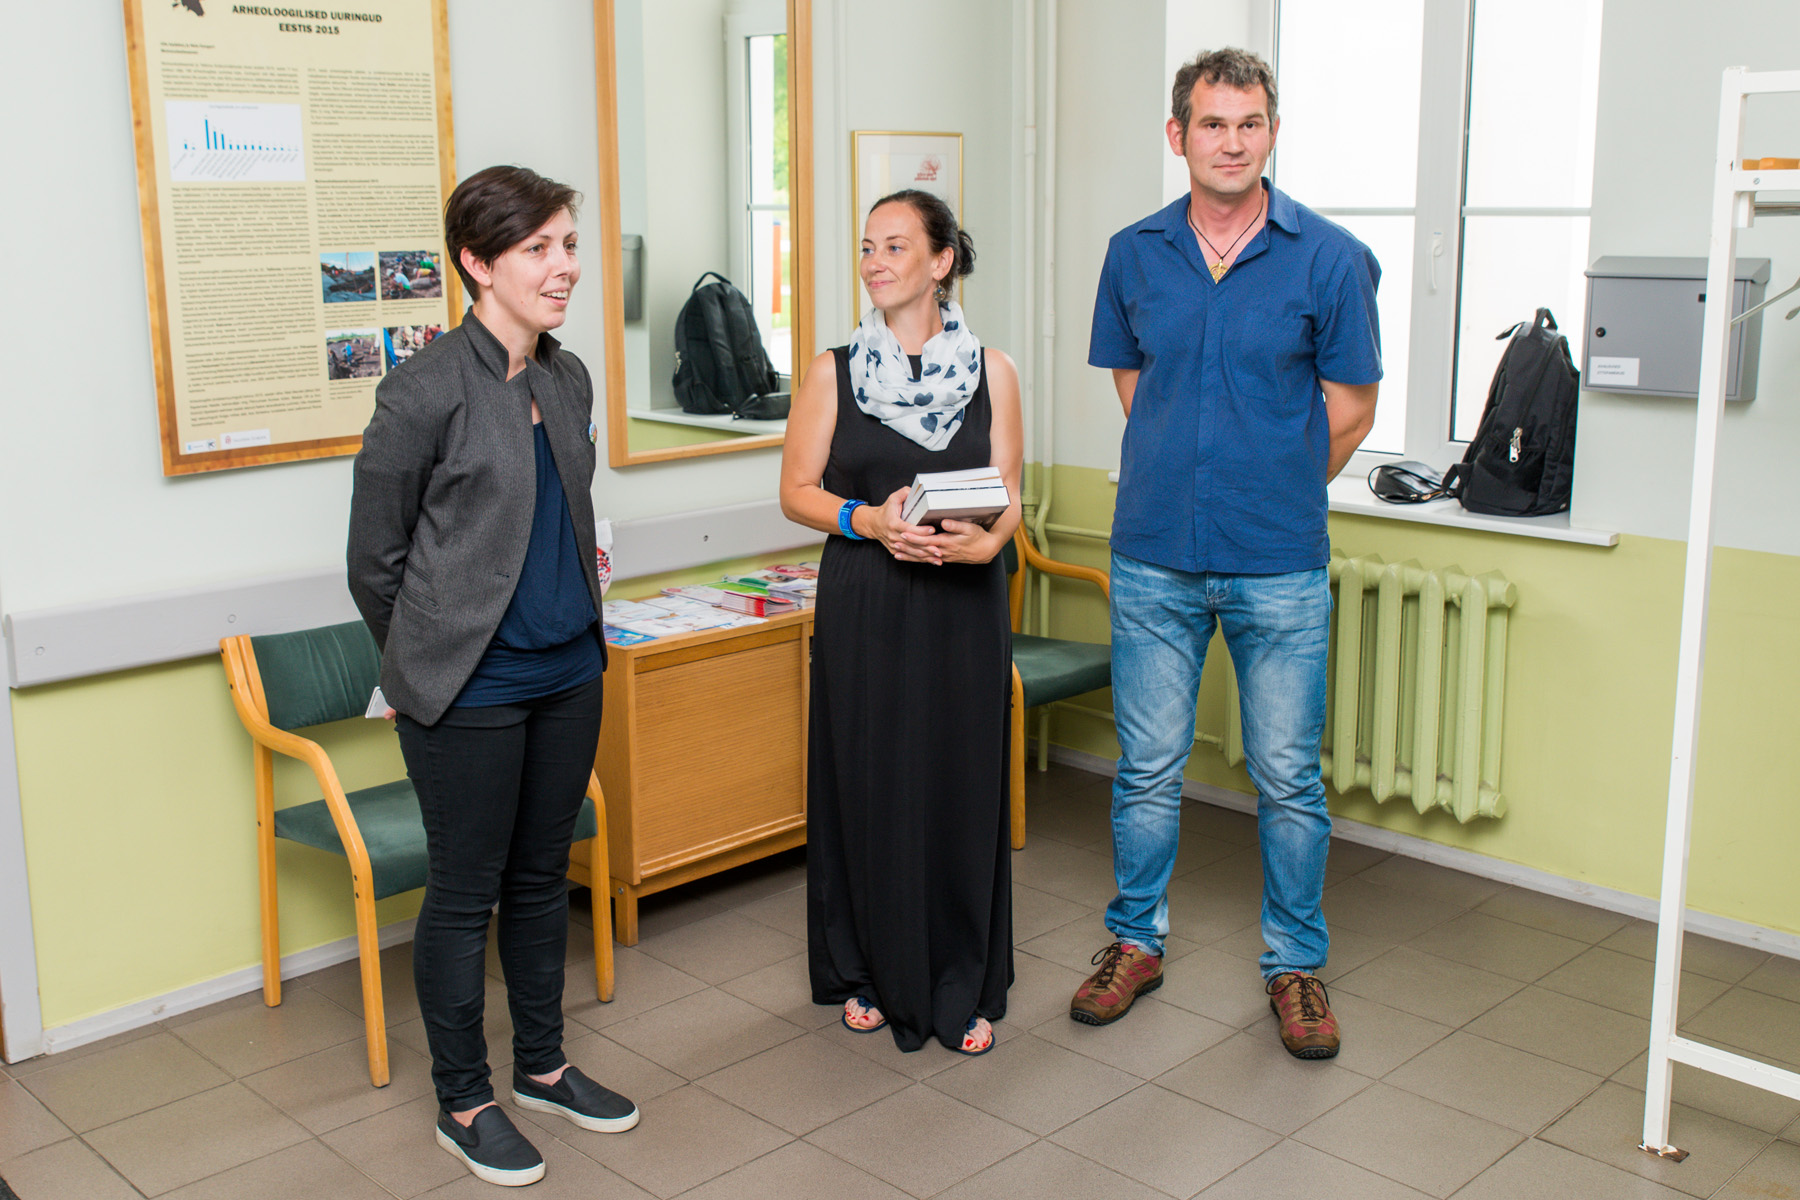 20160627-Kardla-595.jpg - 27. juuni 2016. Näituse "Arheoloogilised välitööd Eestis 2015" avamine Hiiumaa haiglas